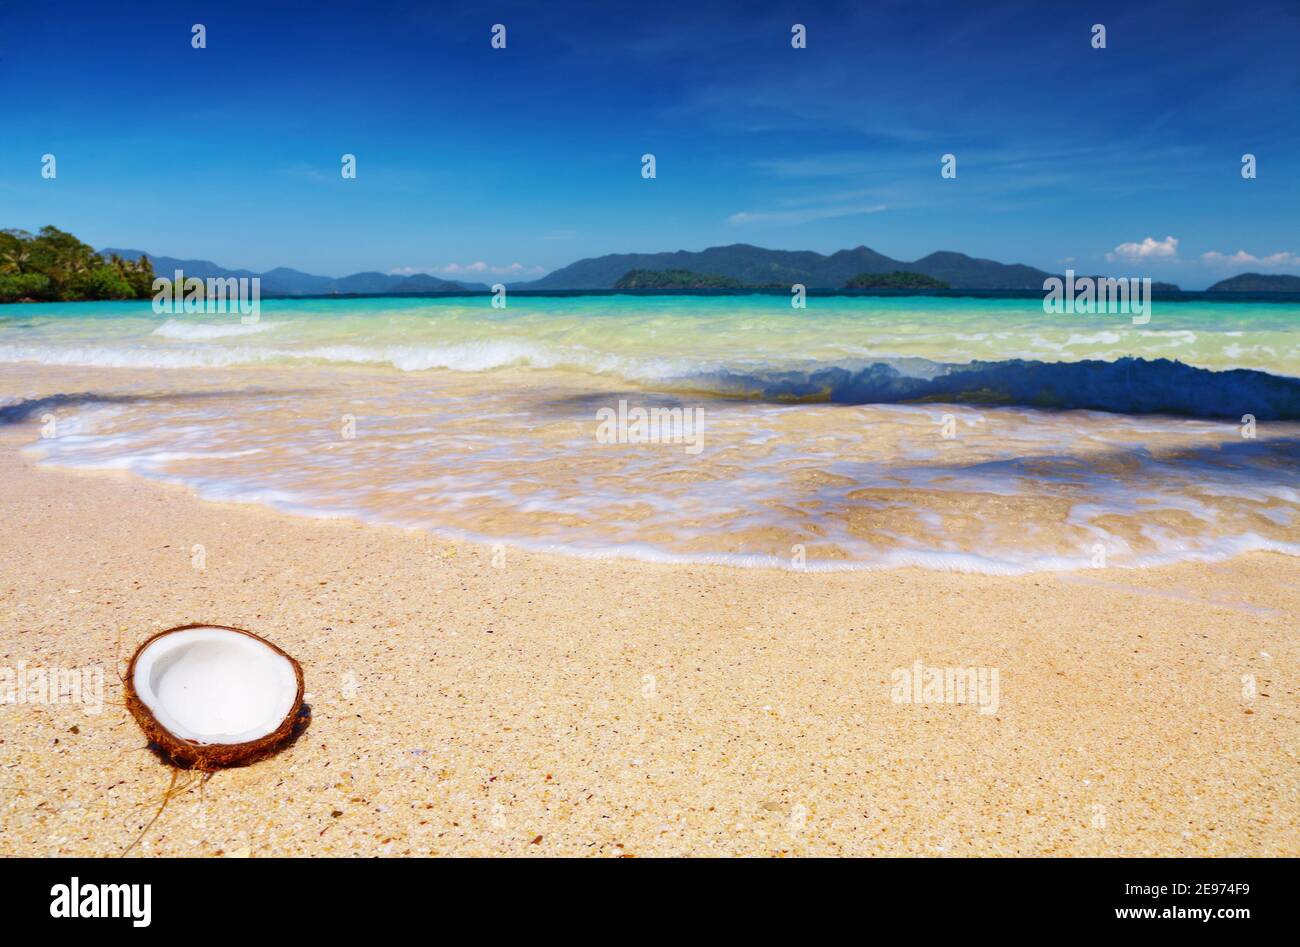 Tropical beach, Wai island, Thailand Stock Photo